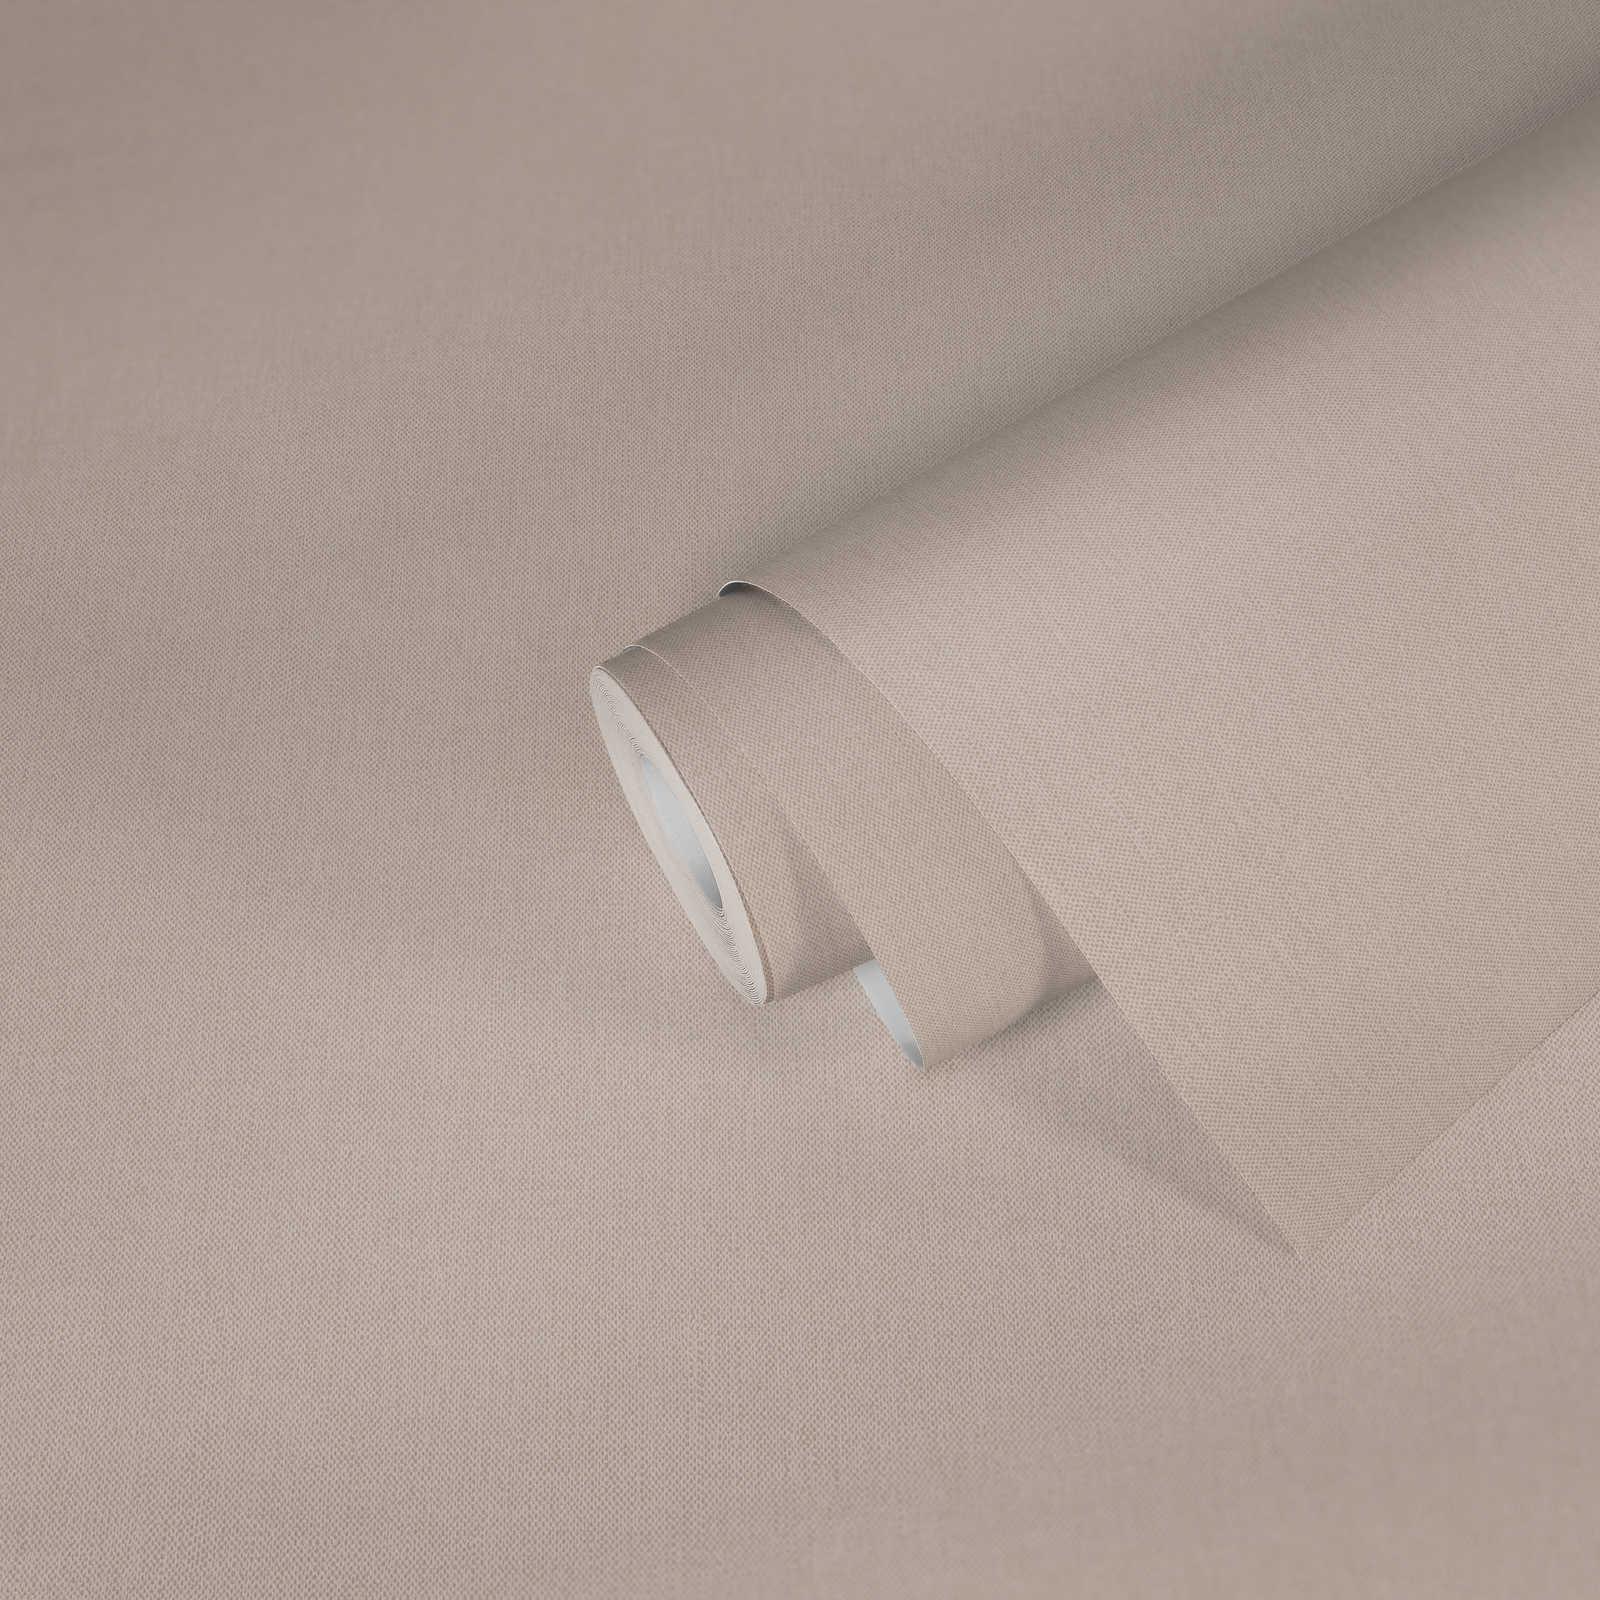             Carta da parati in tessuto non tessuto beige chiaro a tinta unita con struttura tessile - beige, crema
        